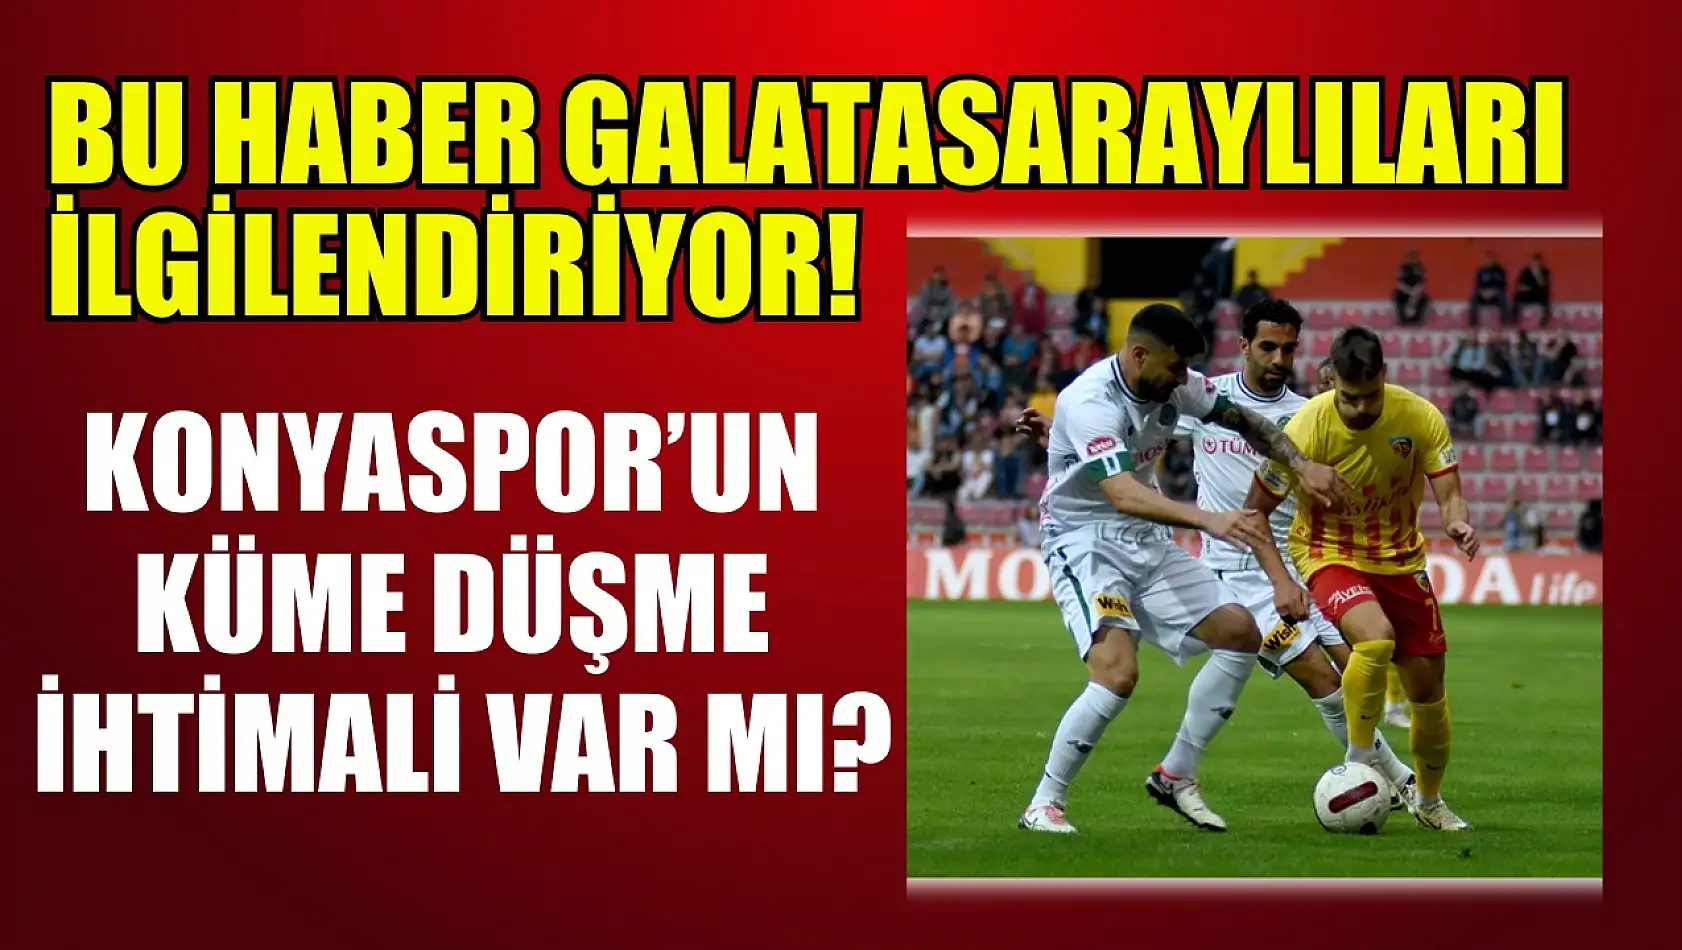 Bu haber Galatasaraylıları ilgilendiriyor! Konyaspor'un küme düşme ihtimali var mı?